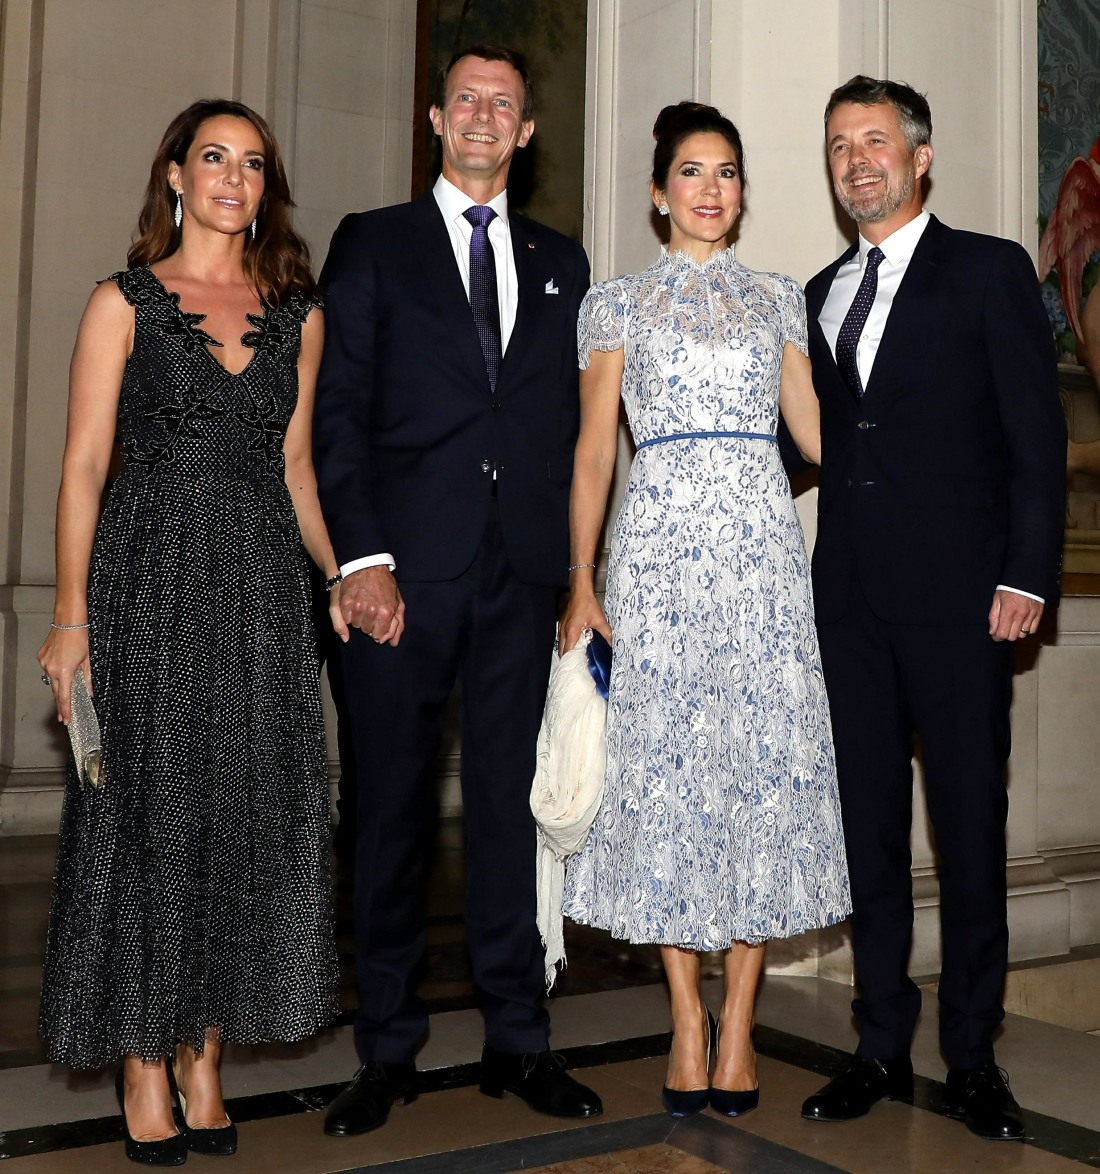 kaltak | Veliaht Prenses Mary, Danimarka kraliyet ailesindeki unvan sorunu hakkında konuşuyor